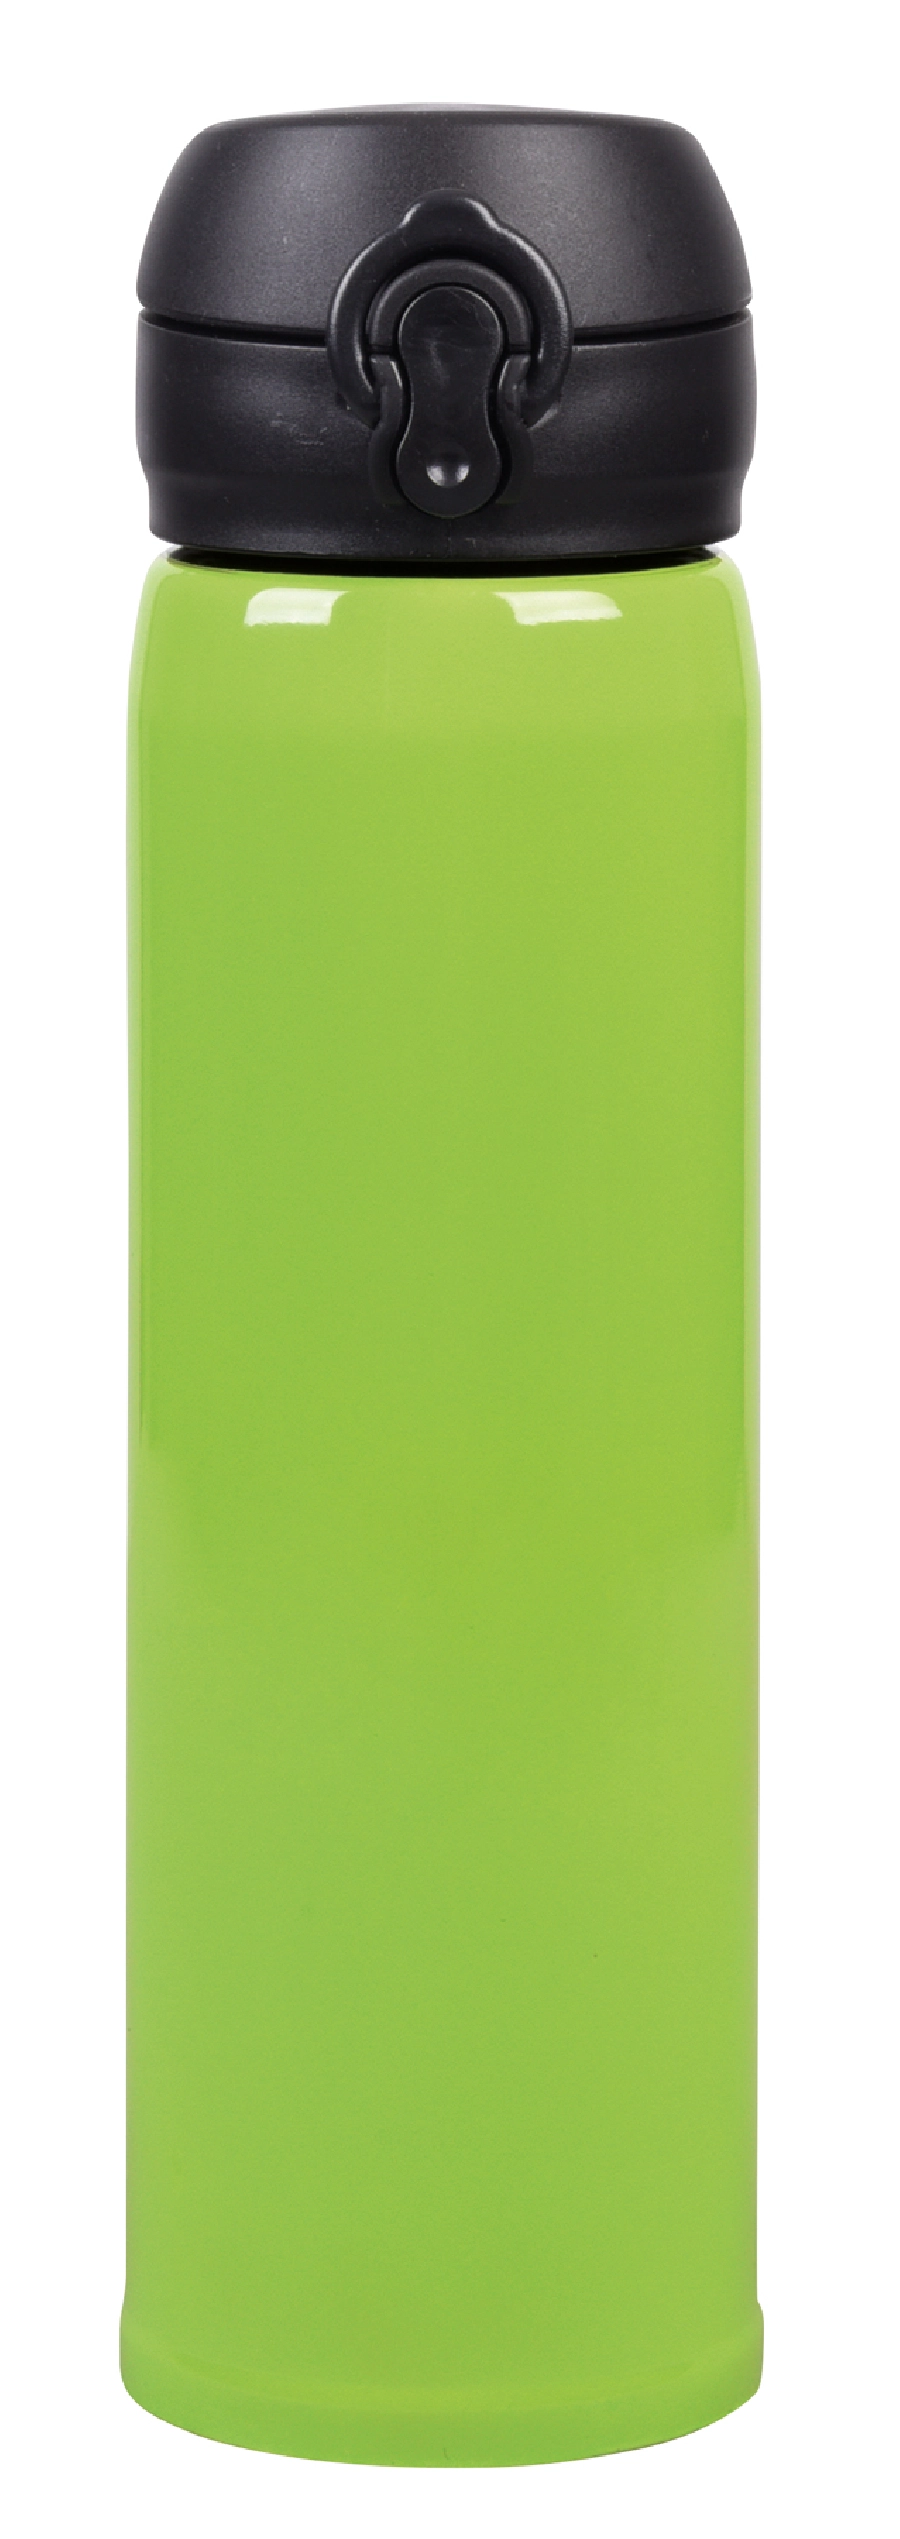 Butelka próżniowa OOLONG, zielone jabłko 56-0304545